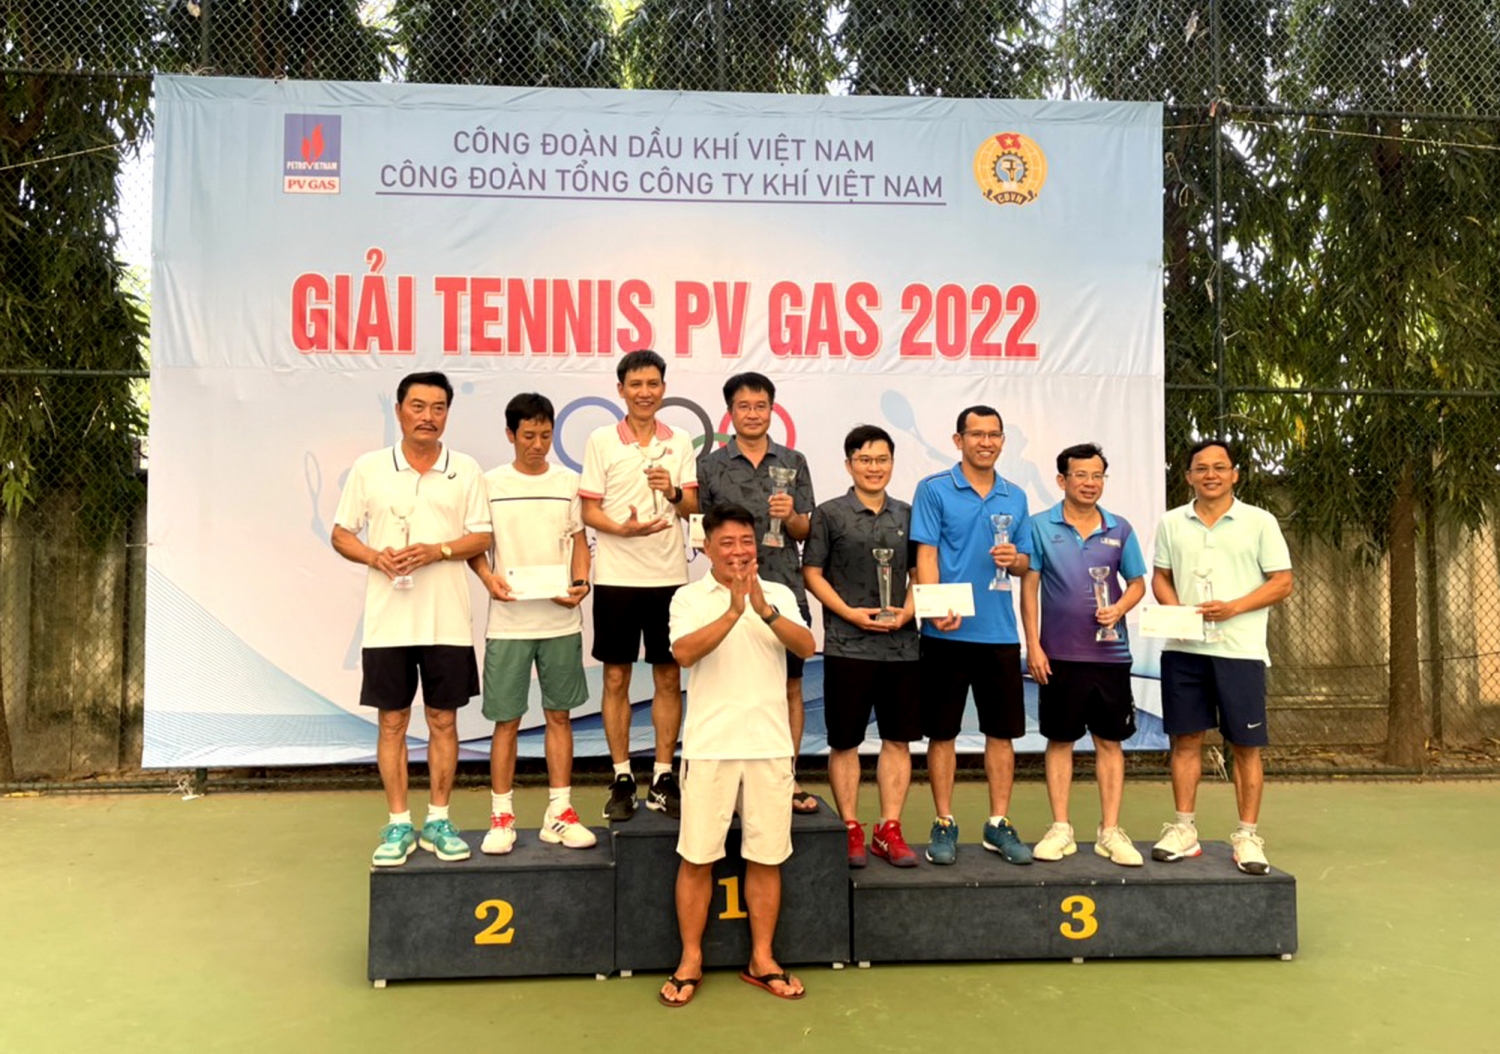 Trao giải Tennis PV GAS 2022 tại Vũng Tàu